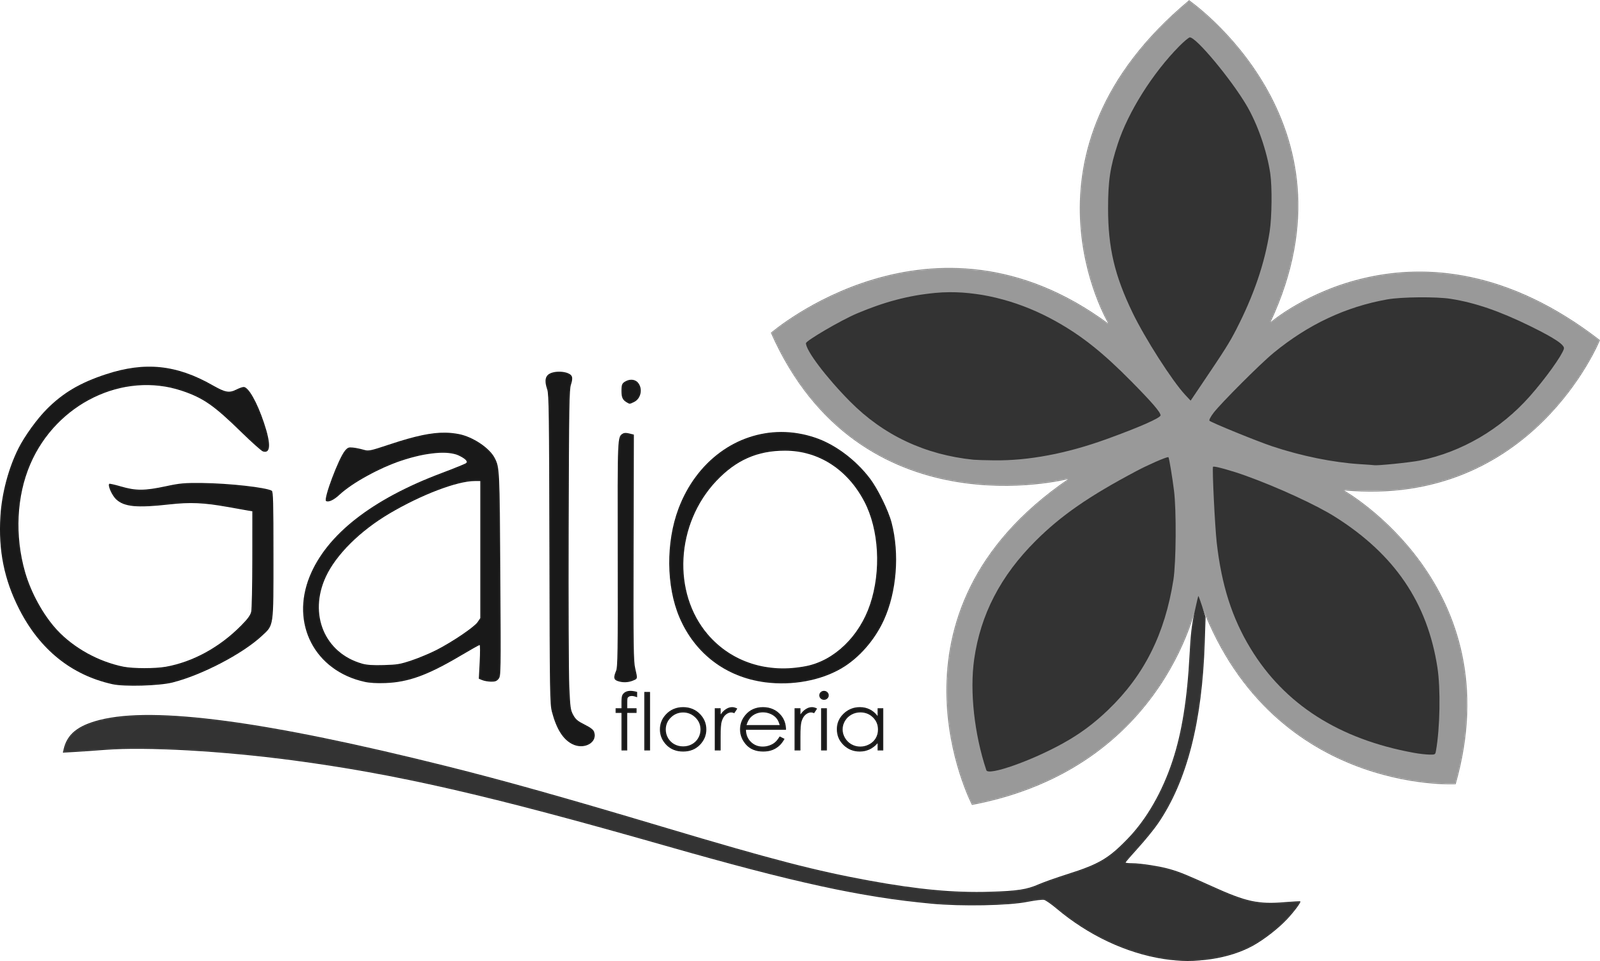 Florería Galio